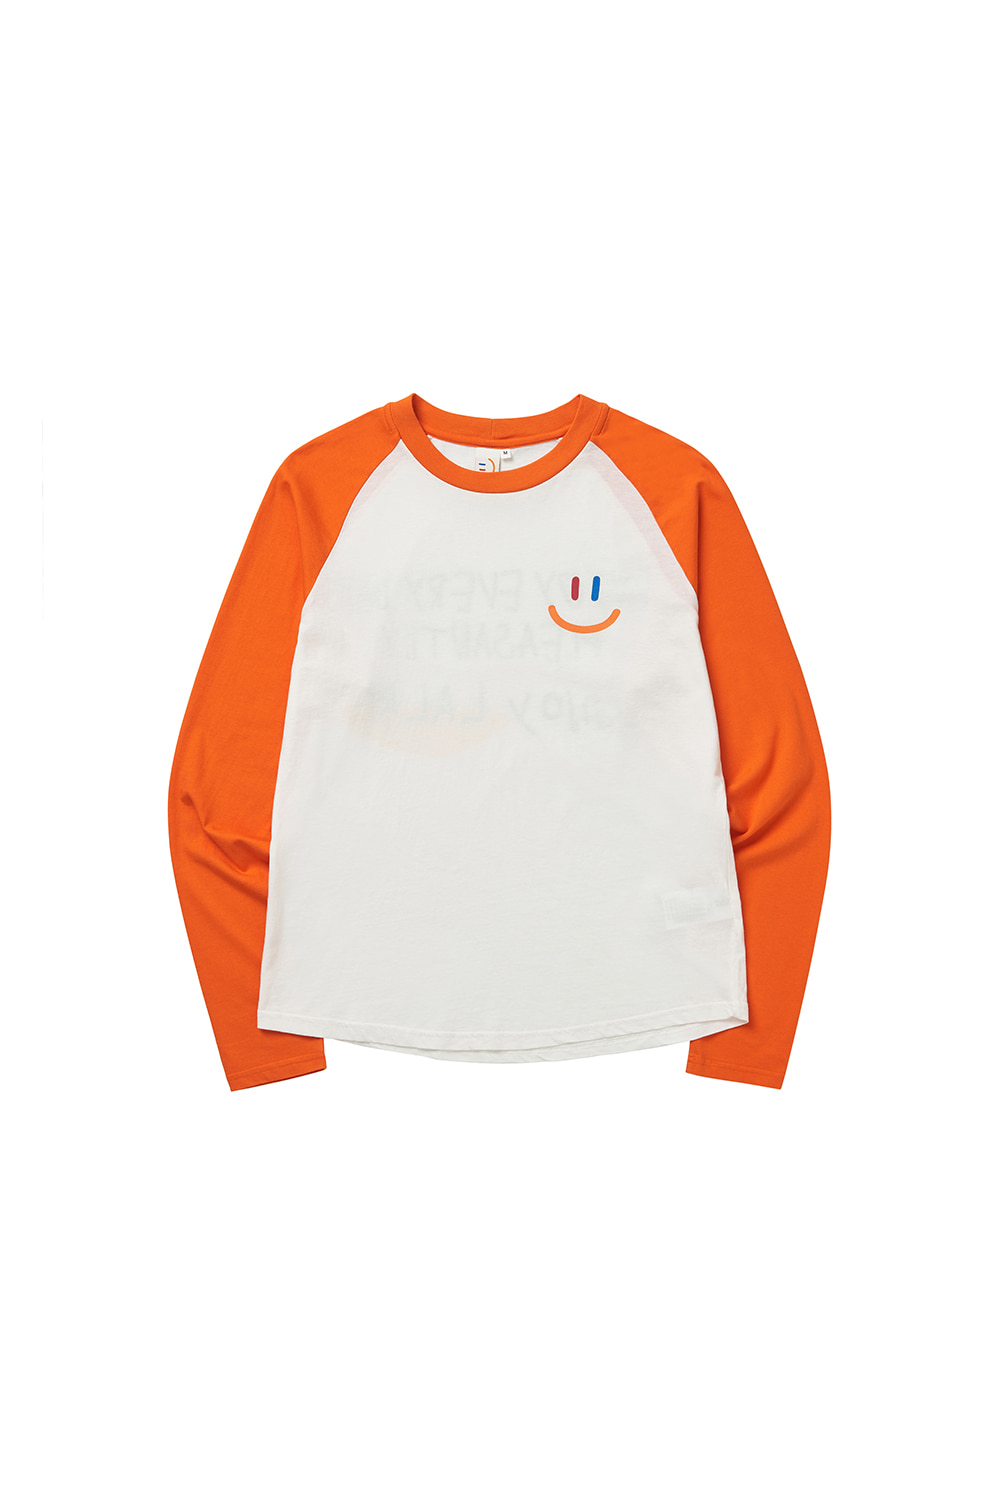 LaLa Kids Raglan T-Shirt [Orange]